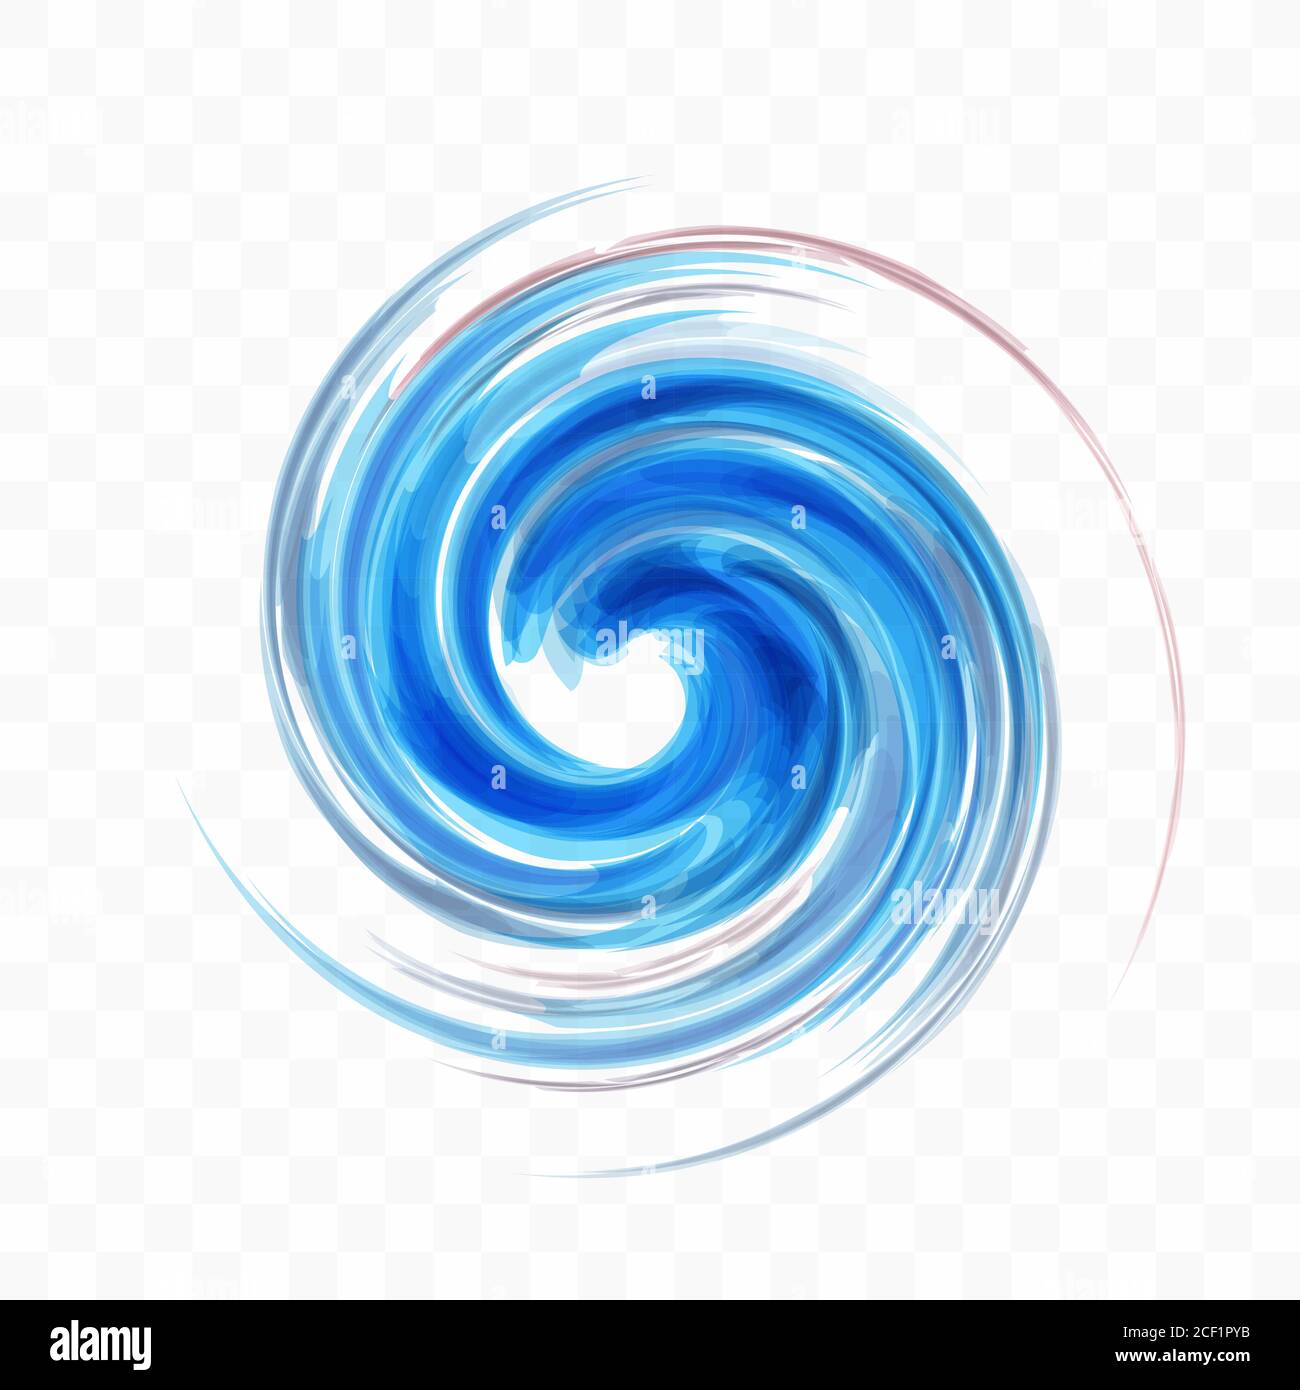 Abstraktes Design-Element mit Wirbel. Spirale, Rotation und Wirbelbewegung. Vektorgrafik mit dynamischem Effekt. Stock Vektor